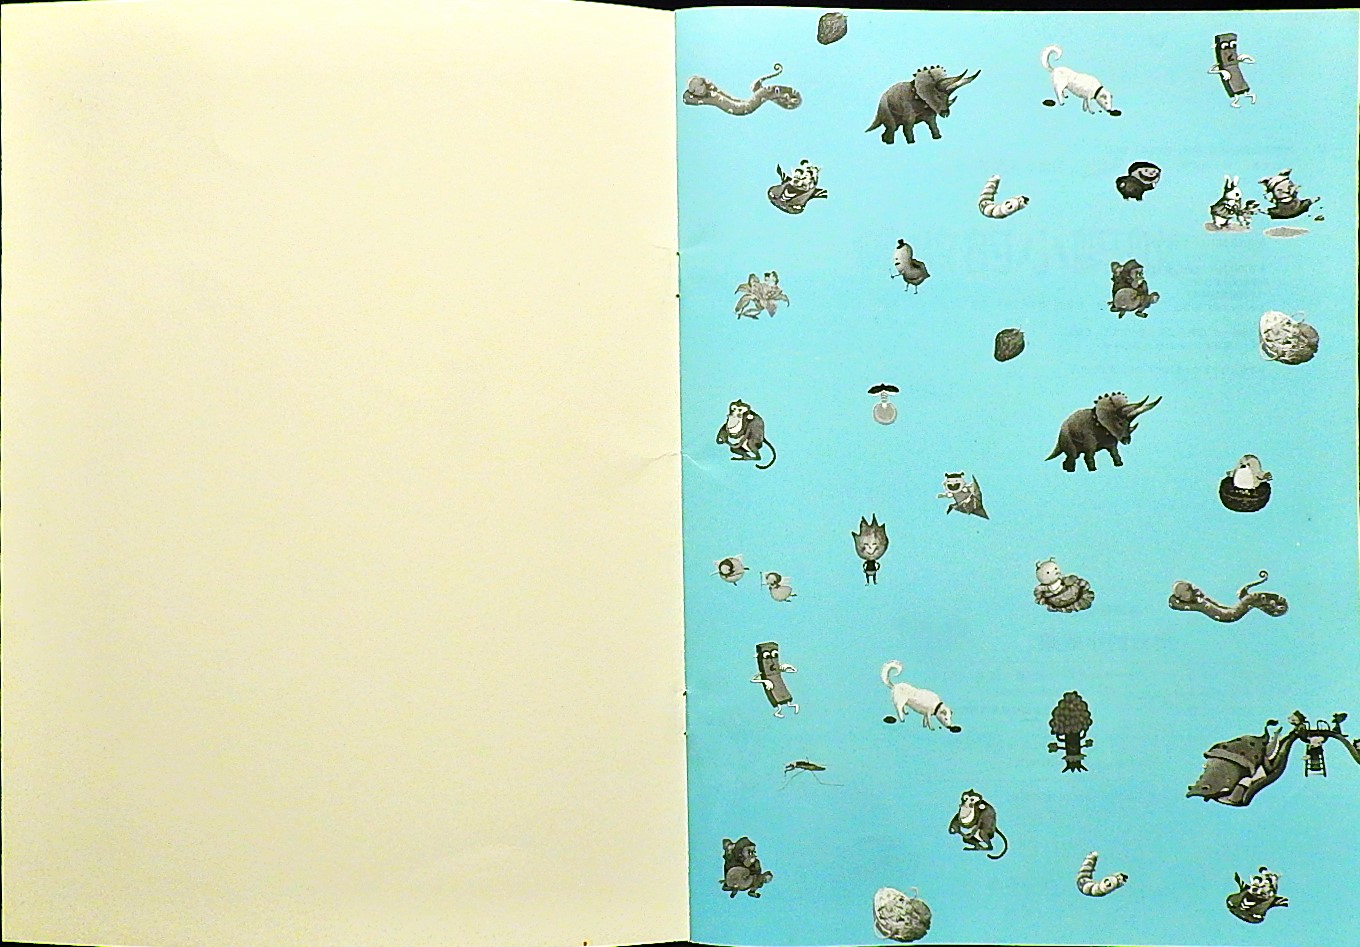 勇敢的小蚂蚁 (02),绘本,绘本故事,绘本阅读,故事书,童书,图画书,课外阅读